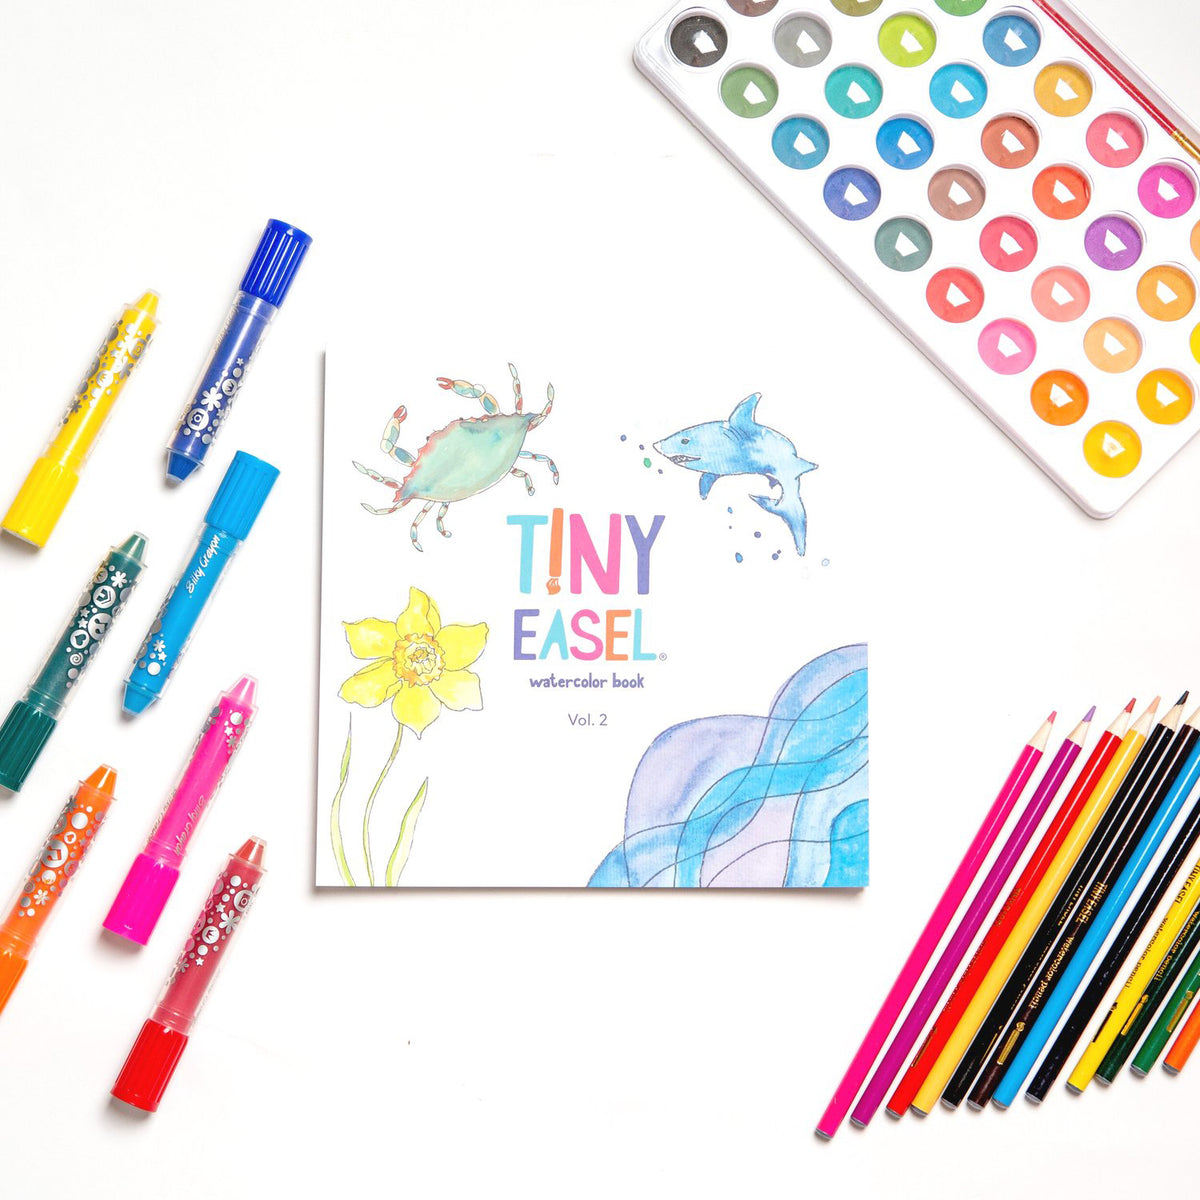 Children’s Painter Essentials Kit